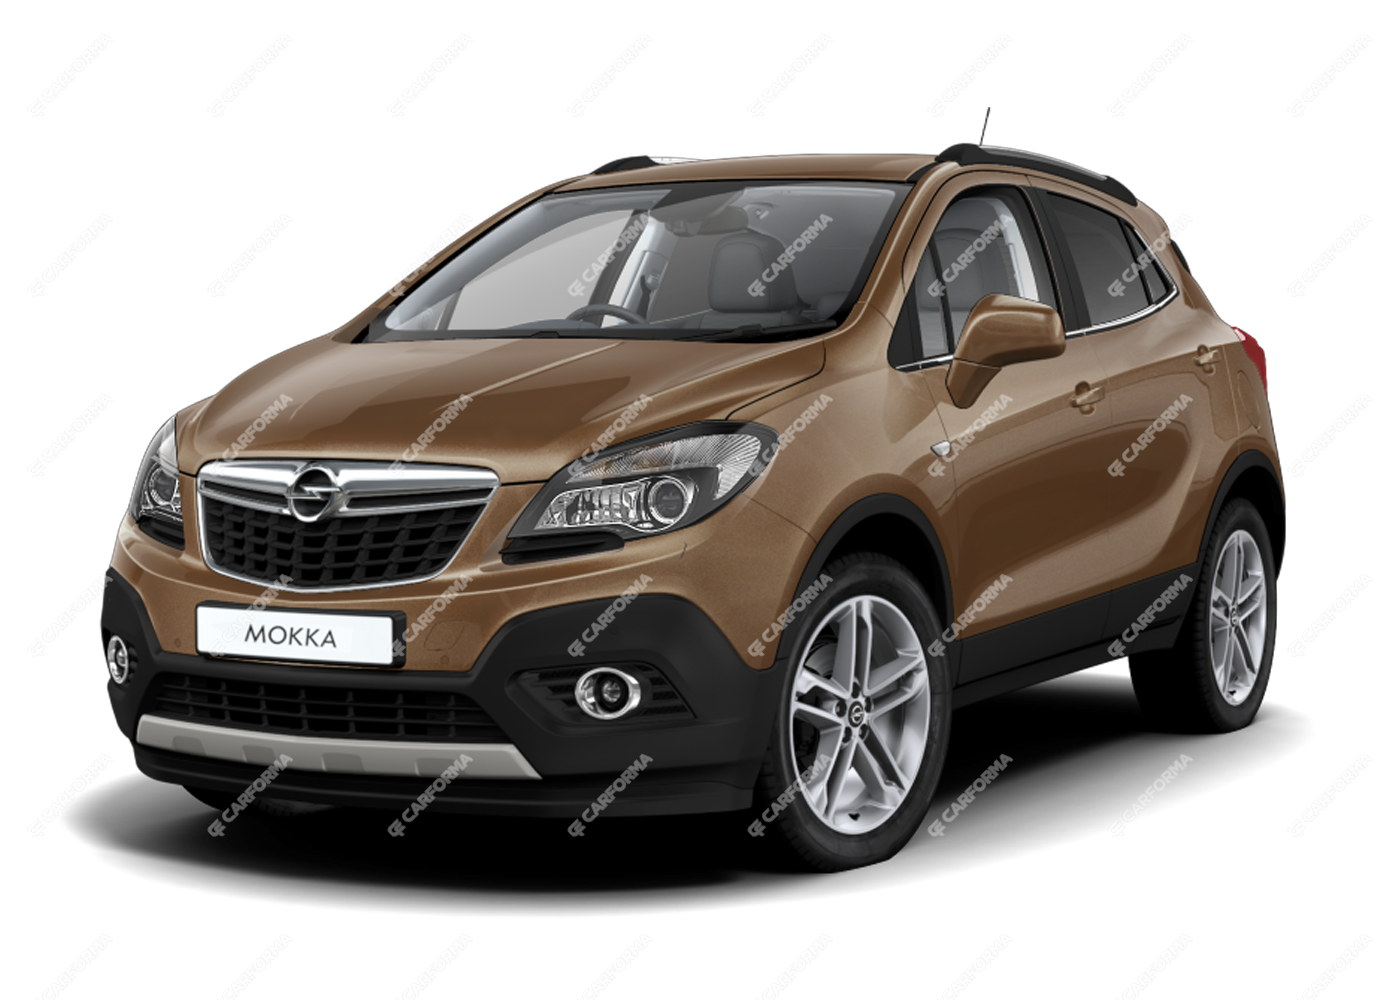 Ворсовые коврики на Opel Mokka (2012-2024) в Москве - купить автоковрики  для Опель Мокка в салон и багажник автомобиля | CARFORMA